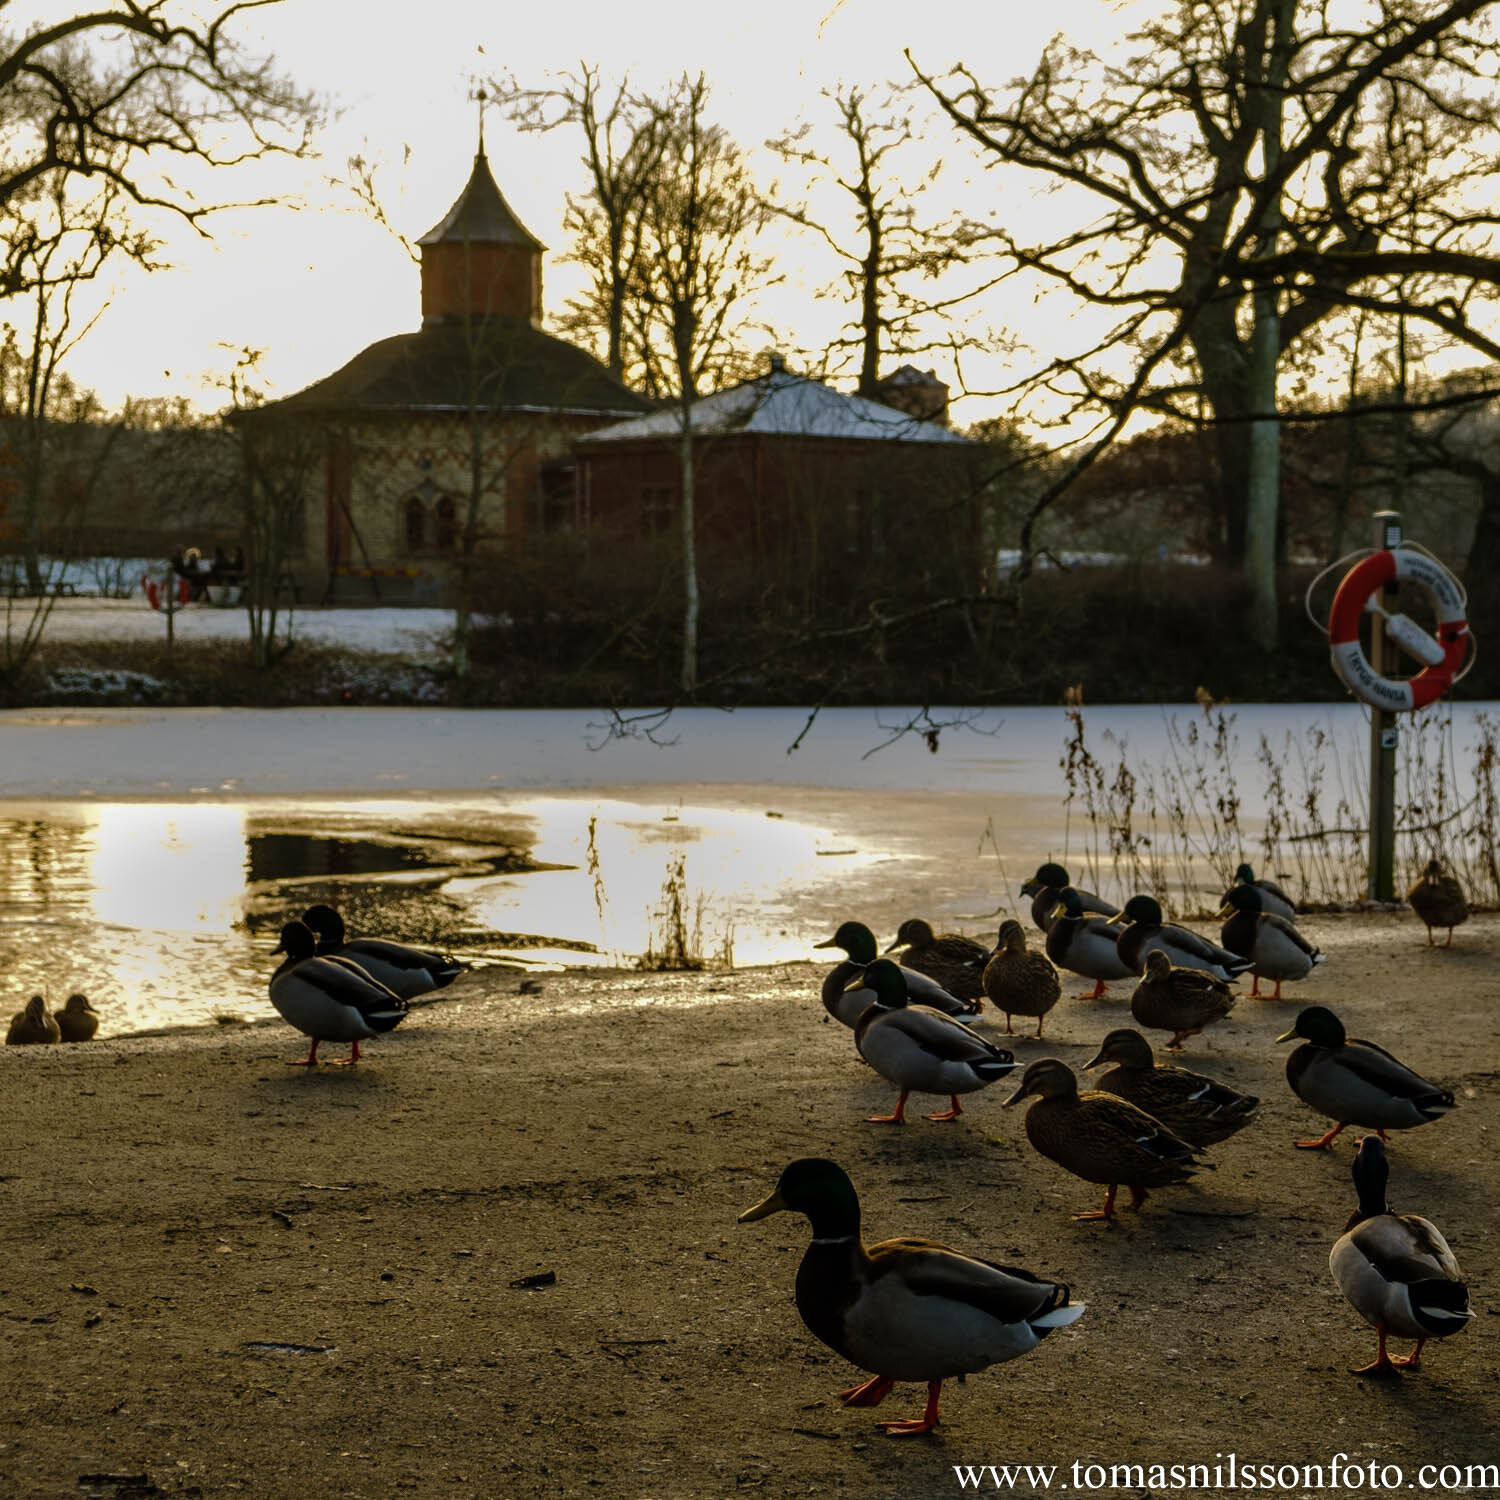 Day 34 - February 3: Ducks at dusk